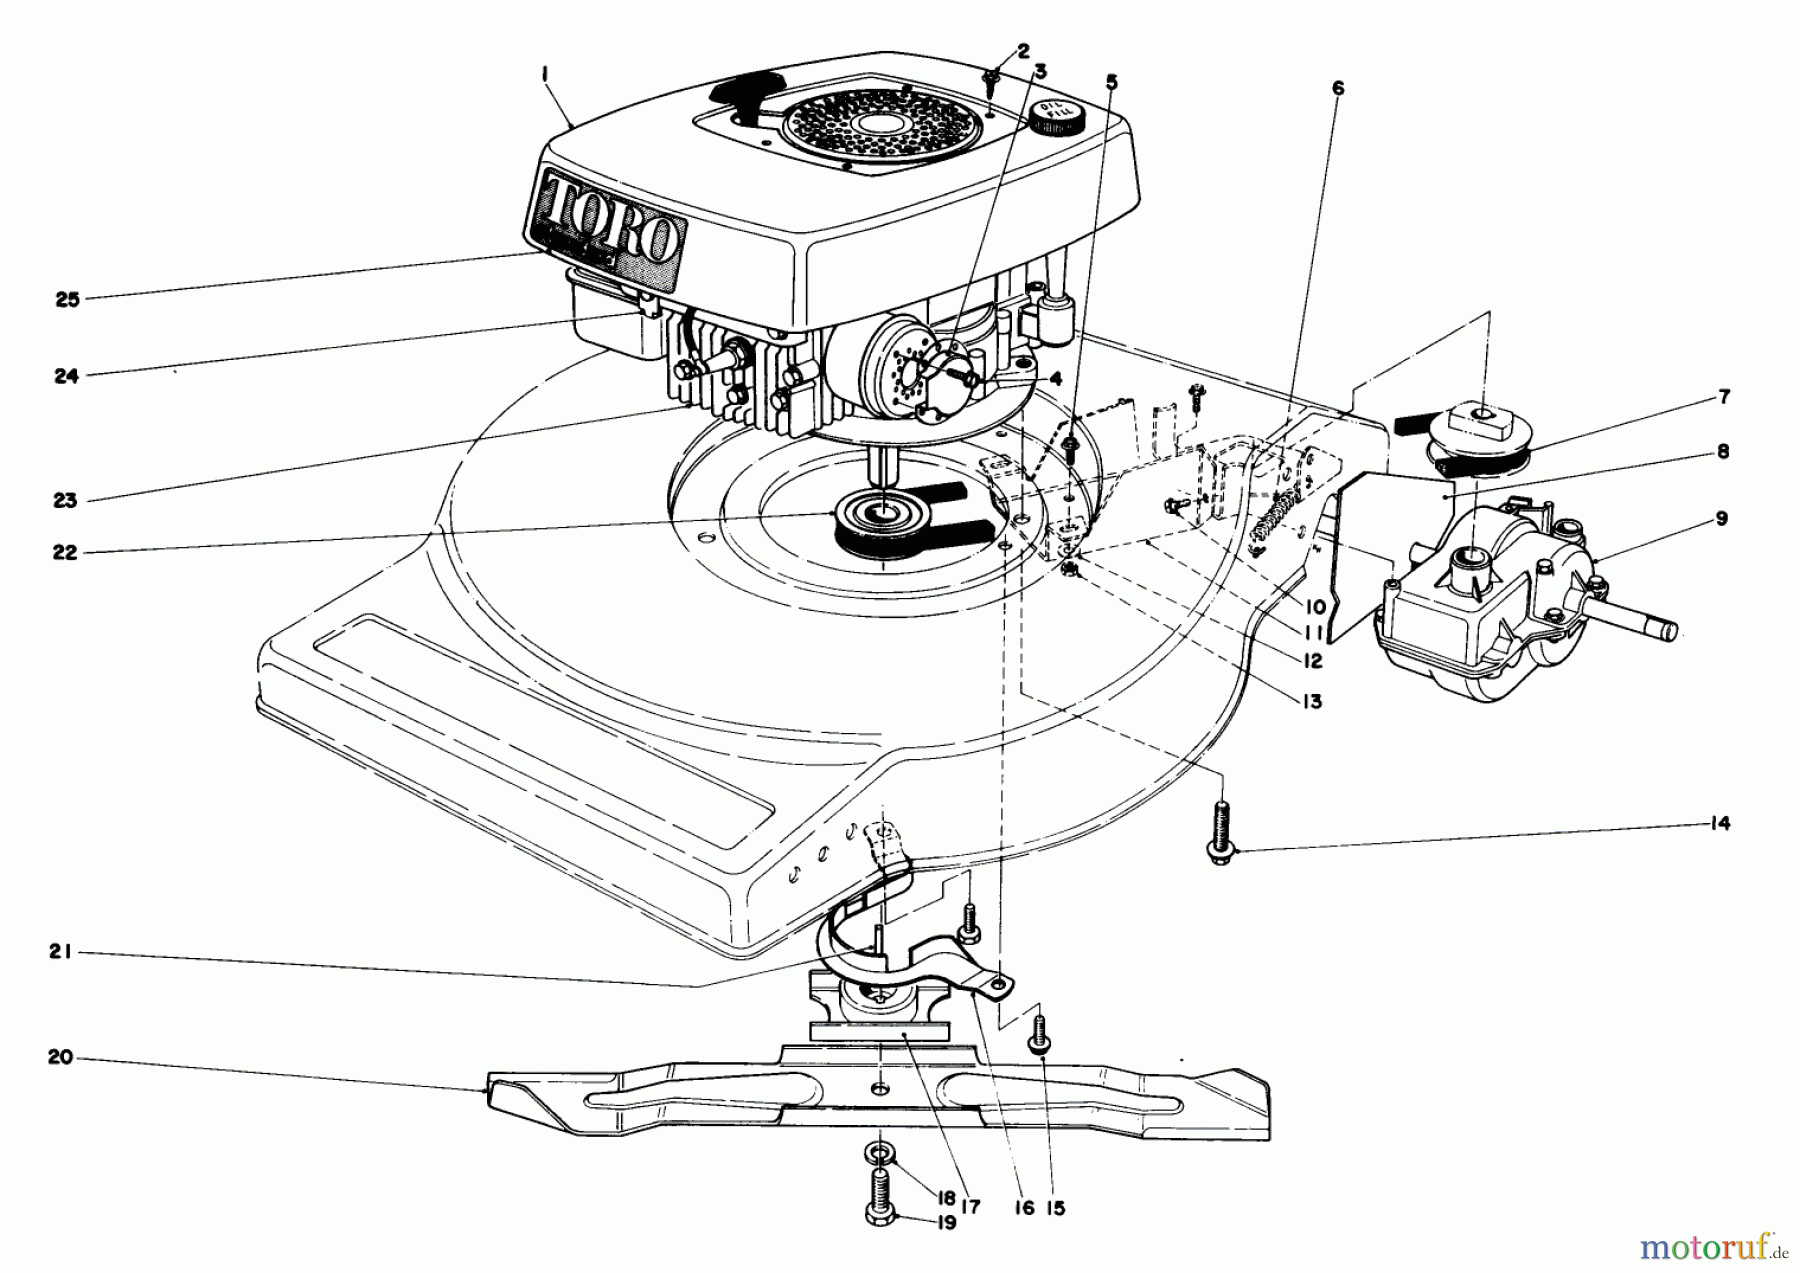  Toro Neu Mowers, Walk-Behind Seite 1 16890 - Toro Lawnmower, 1982 (2000001-2999999) ENGINE ASSEMBLY (MODEL NO. 16890)